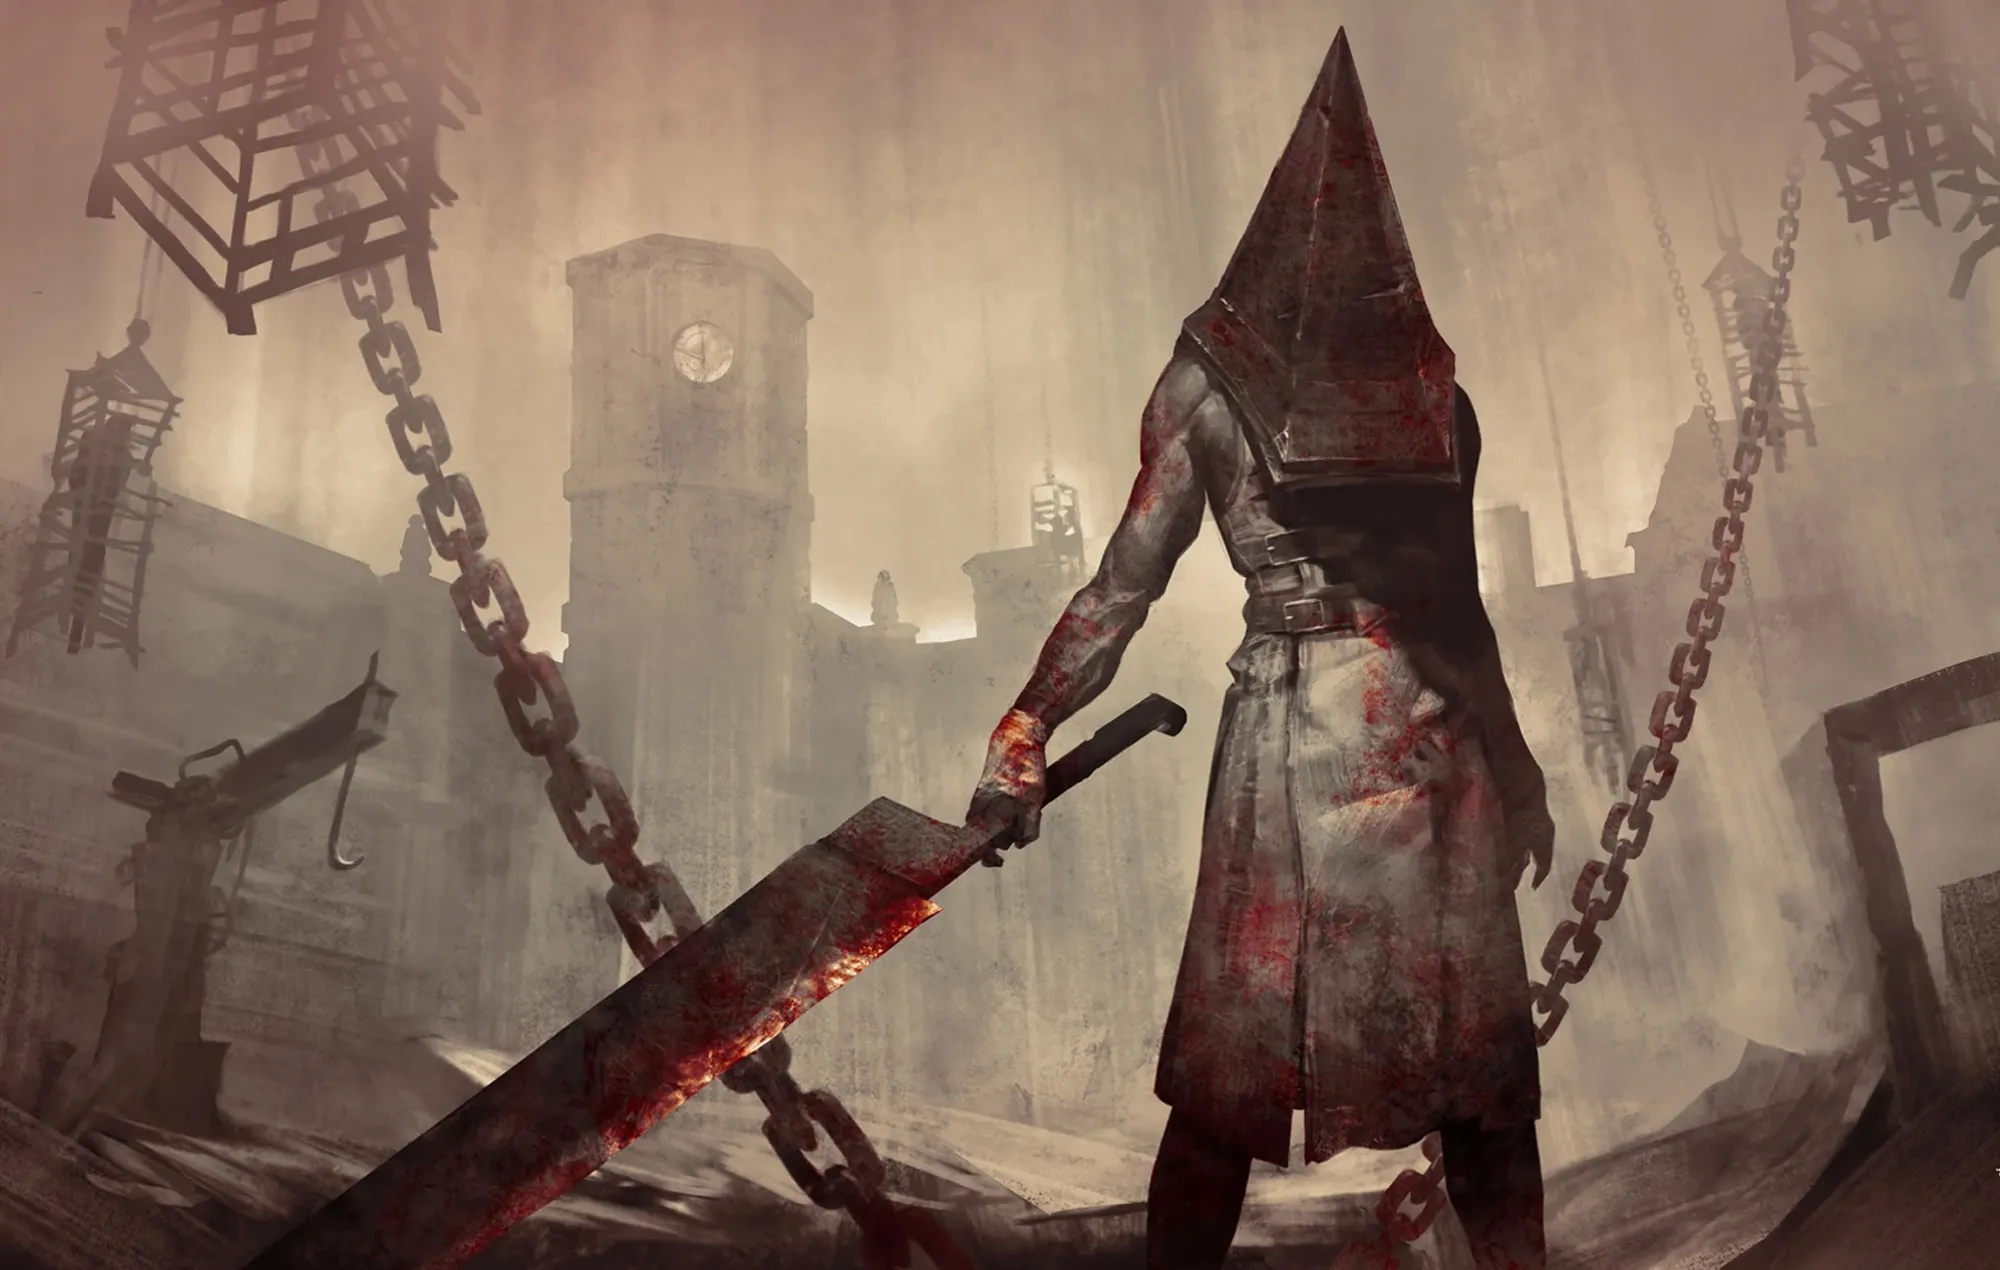 ¿Cuáles son los requisitos para jugar Silent Hill 2 Remake en PC?